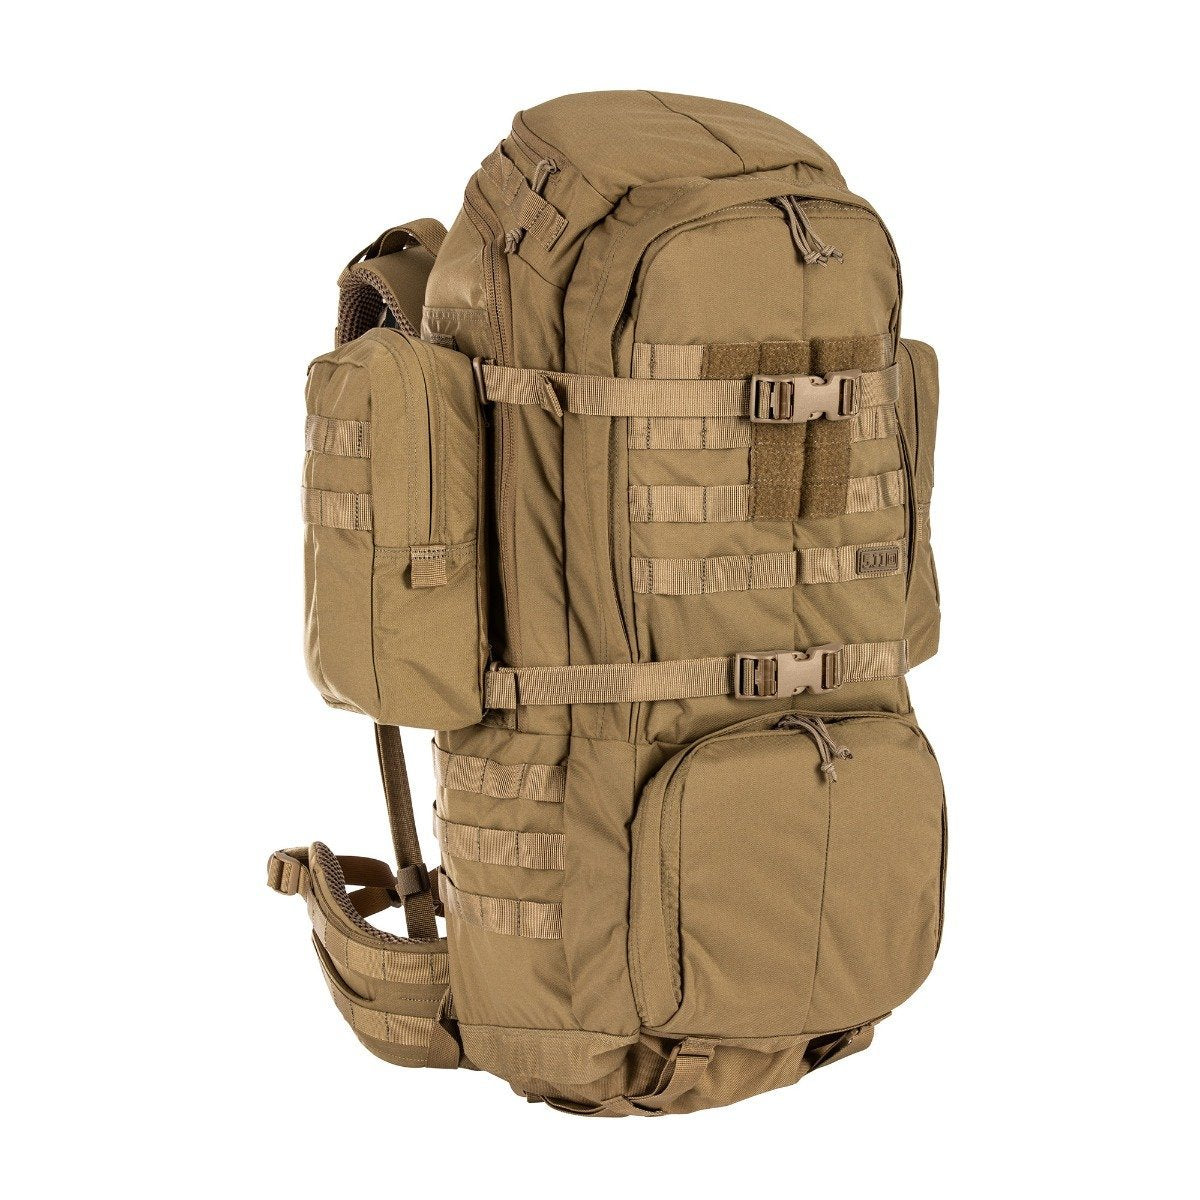 5.11 Tactical Rush 100 60L Backpack Kangaroo Bags, Packs and Cases 5.11 Tactical Tactical Gear Supplier Tactical Distributors Australia